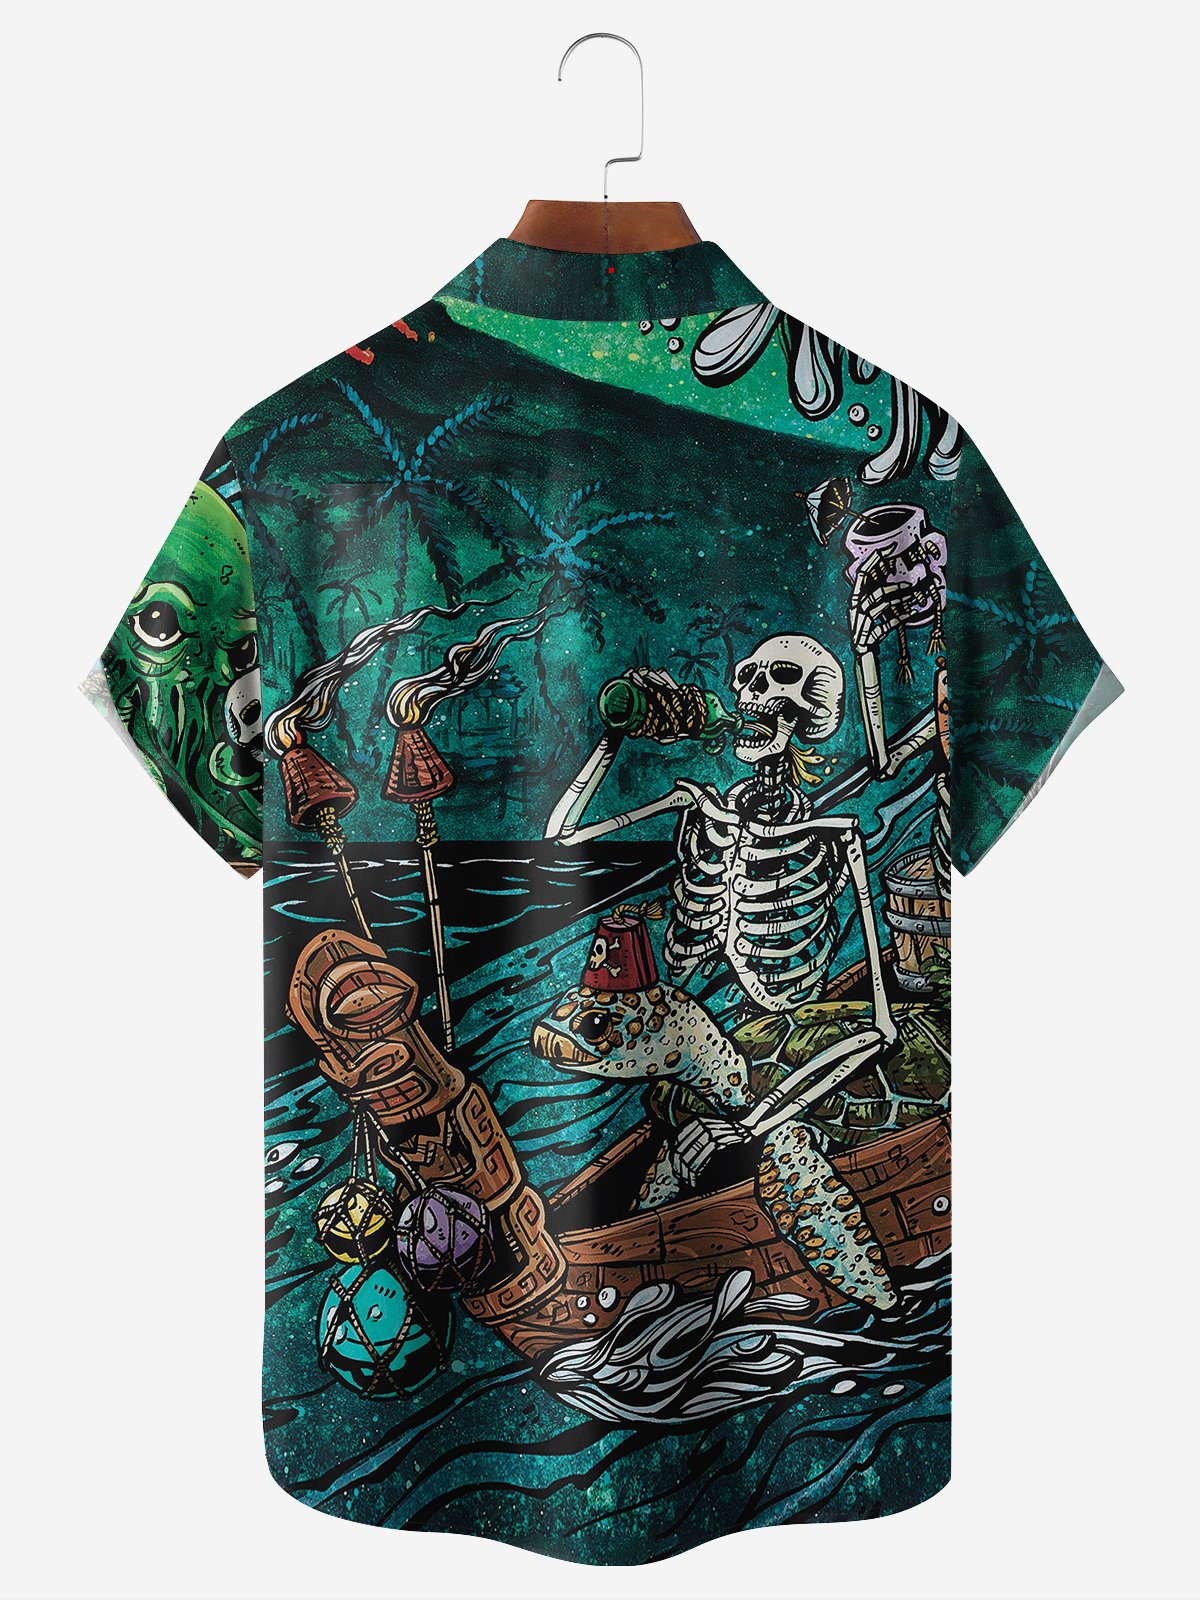 Ocean Wanderer Shirt By David Lozeau